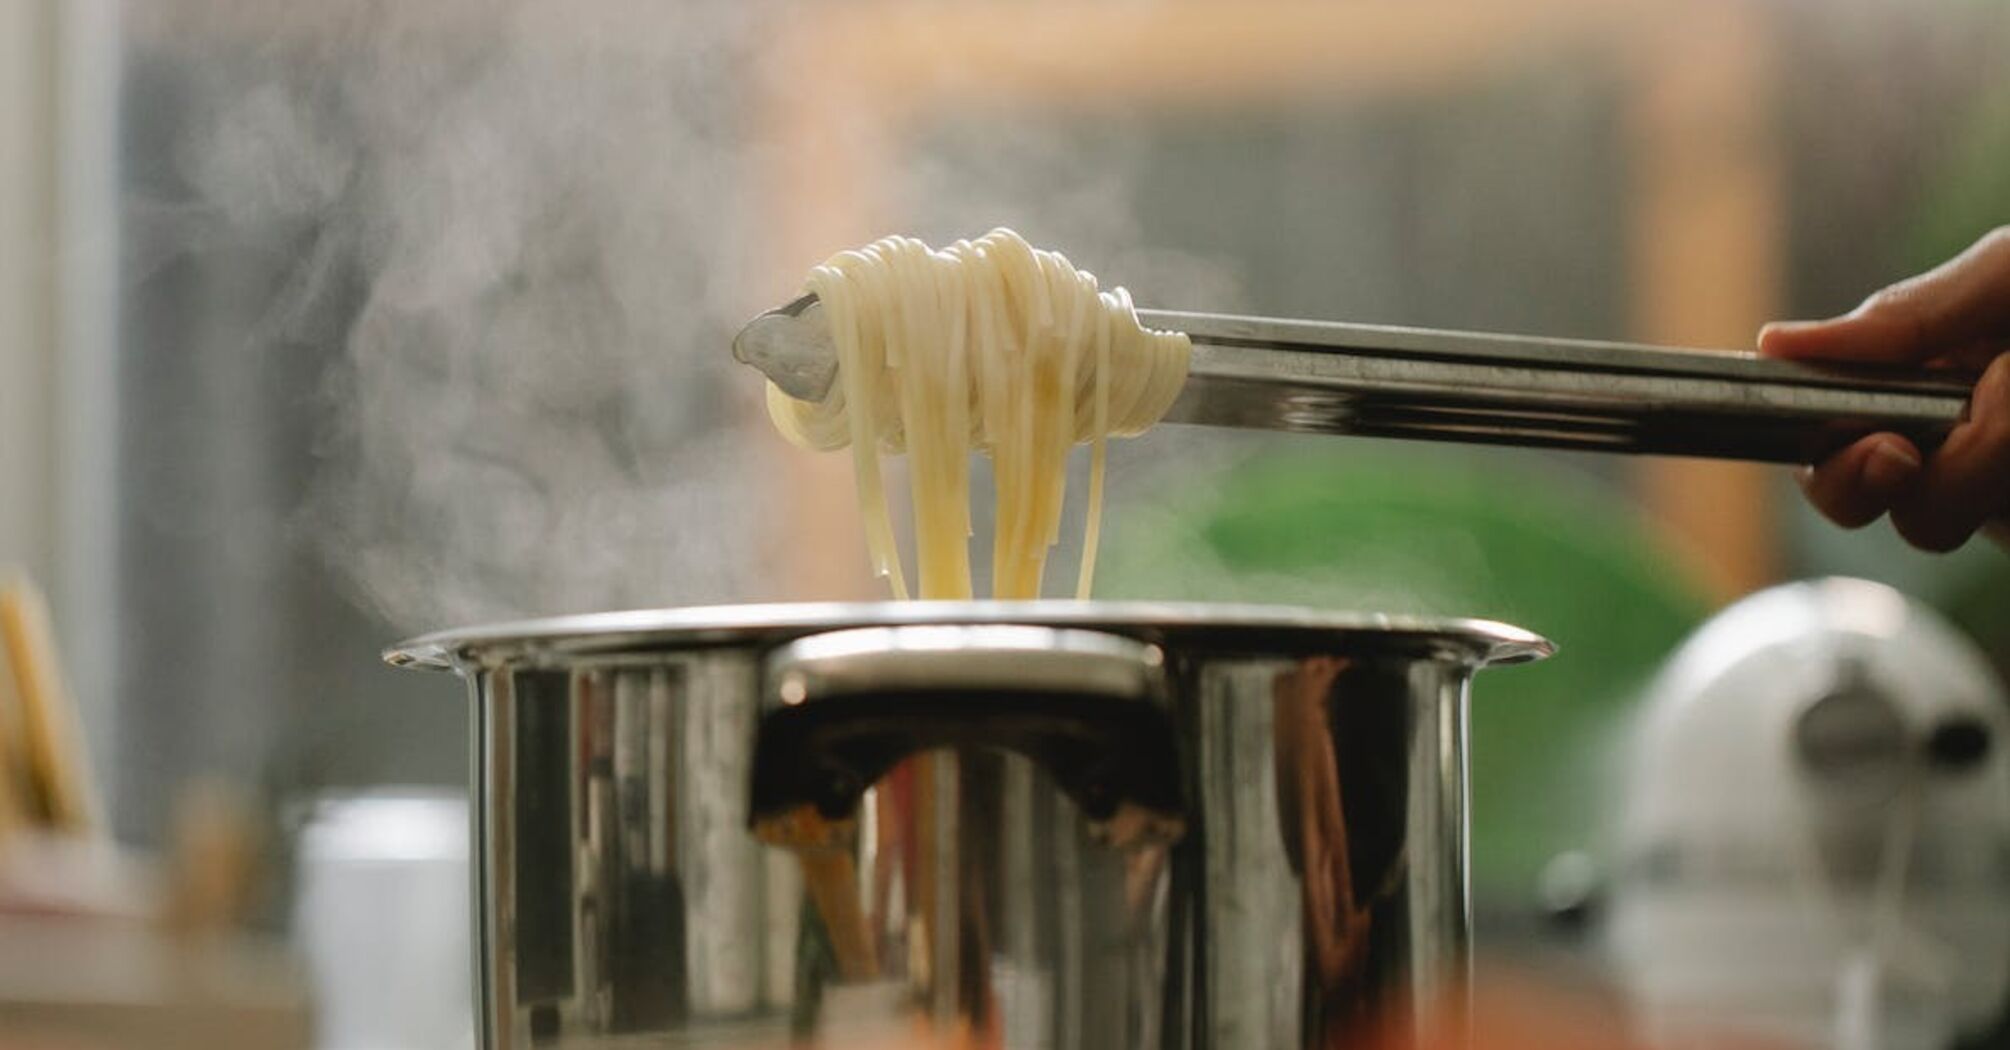 Эксперты объяснили, почему сливать воду из макарон в раковину — плохая идея